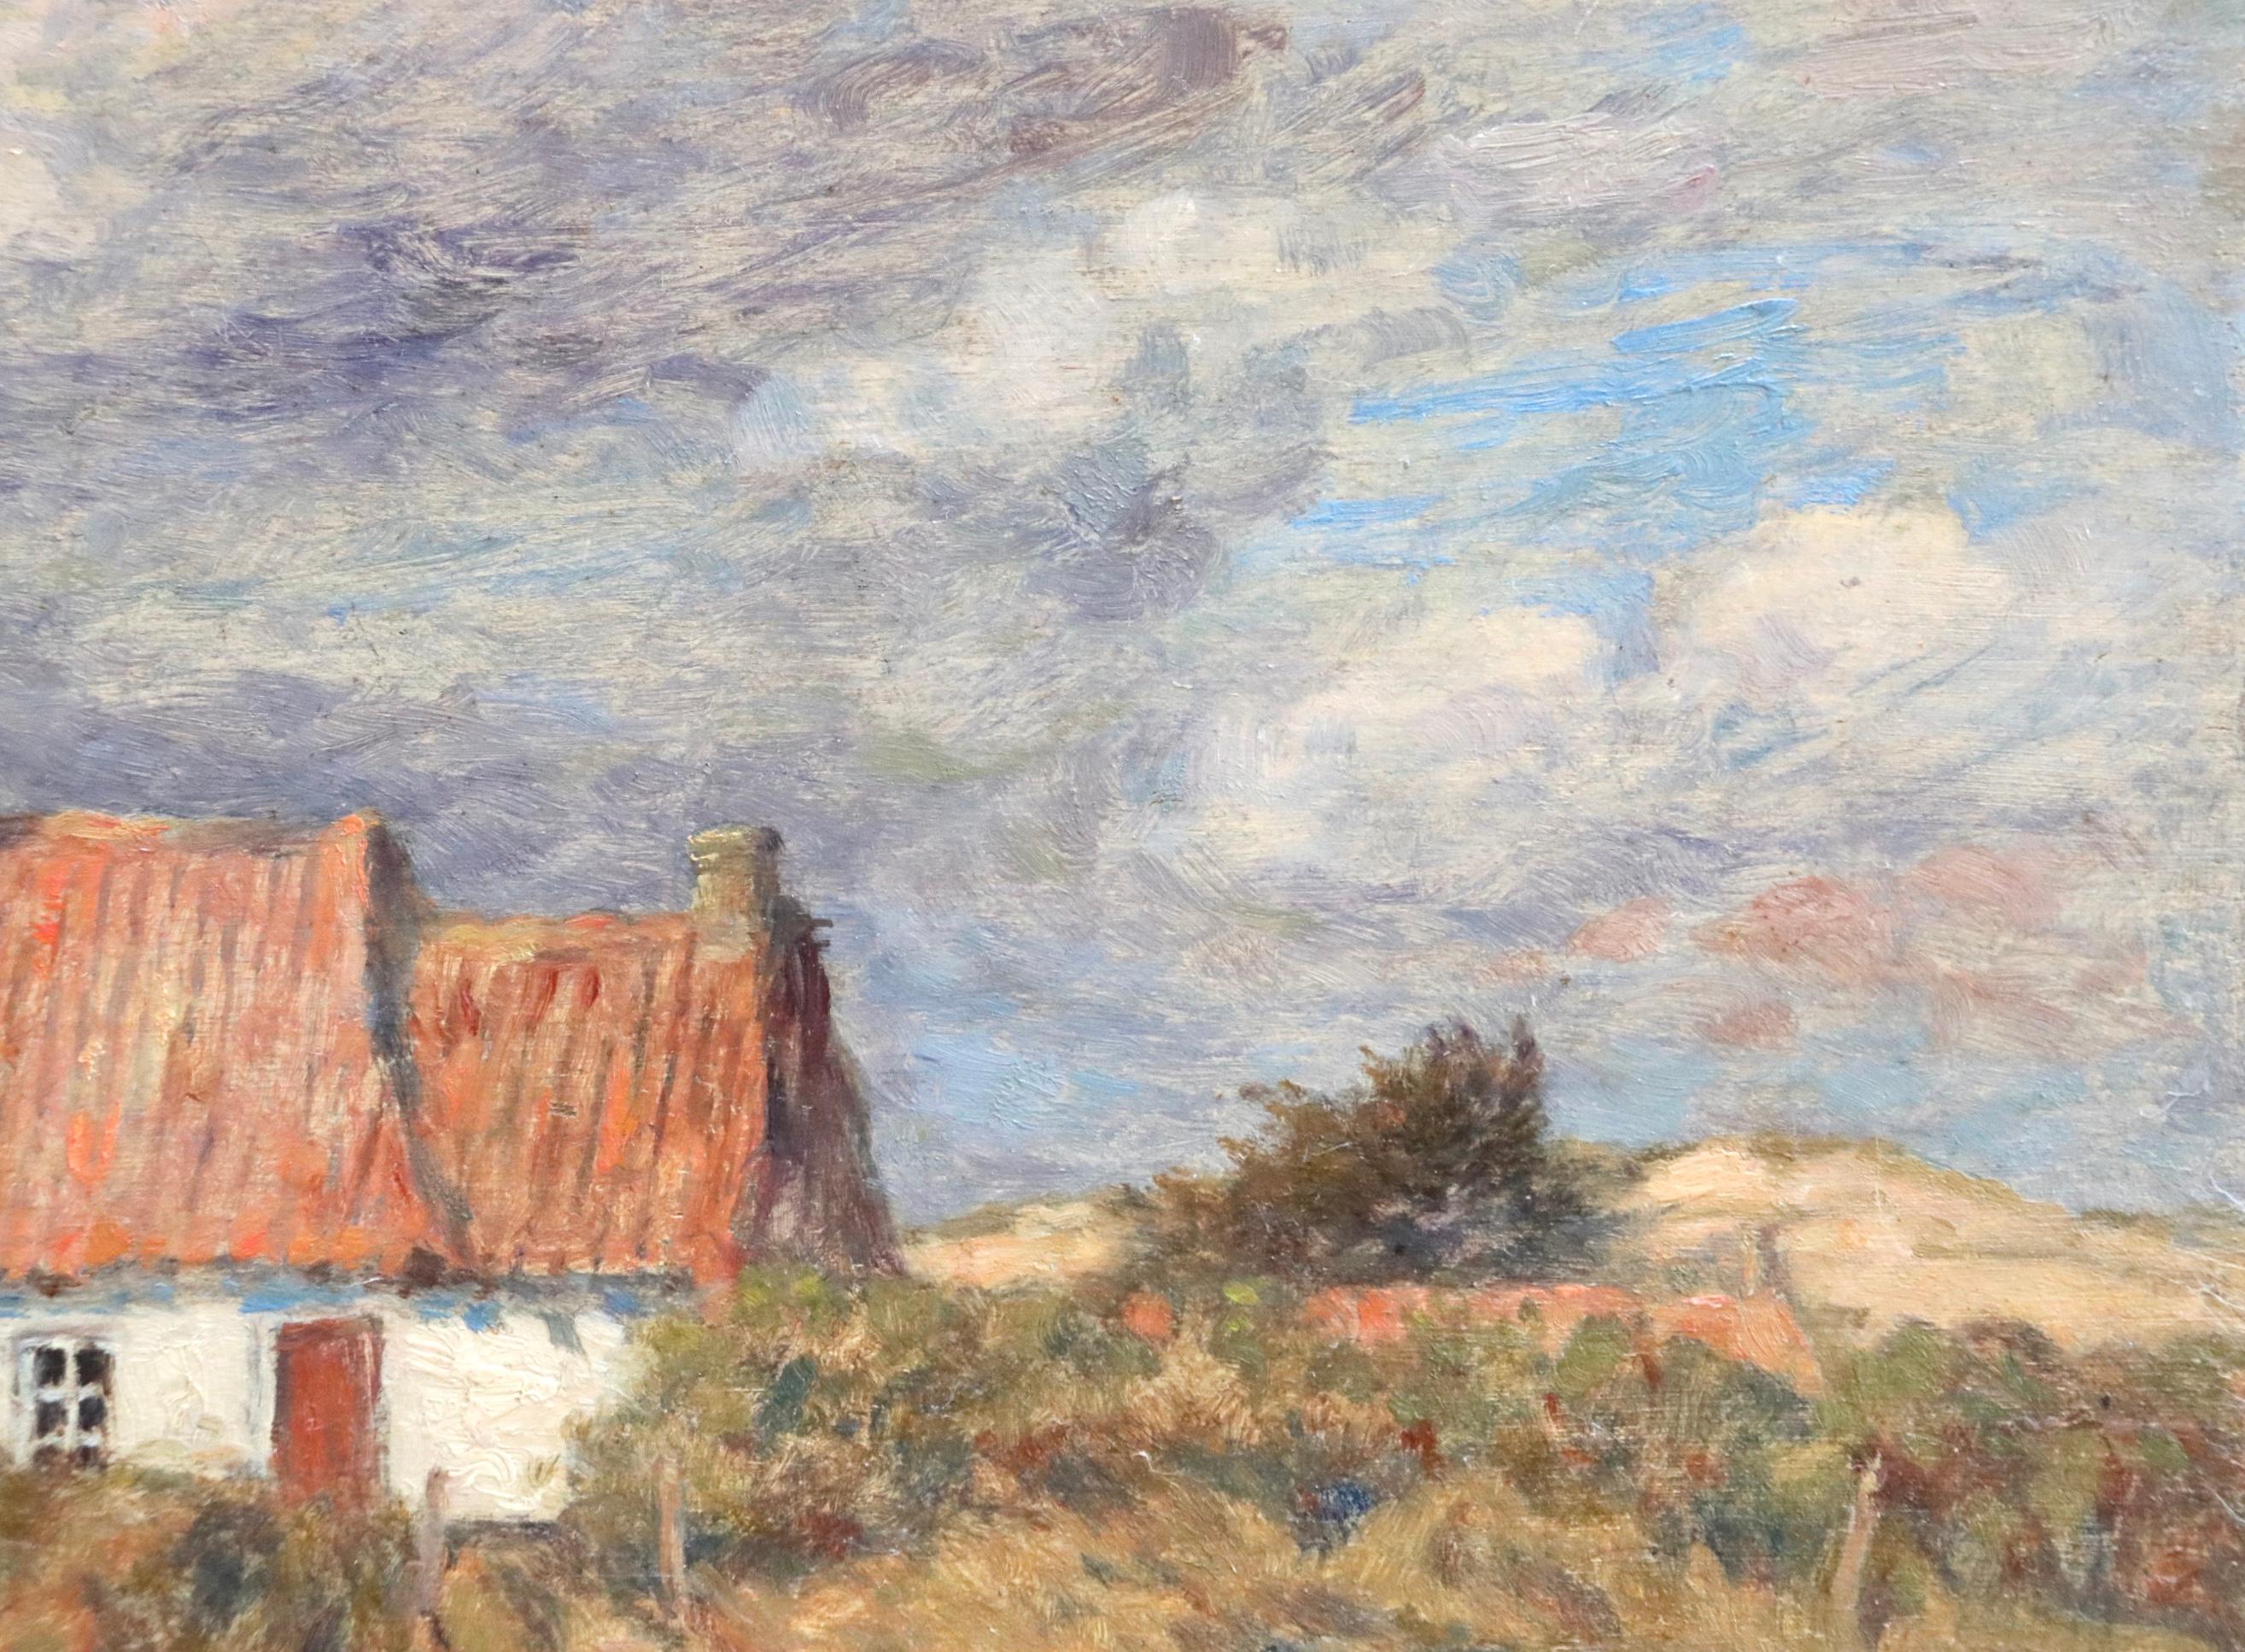 Chalet dans Paysage - Impressionist Oil, Cottage in Landscape by Marie Duhem 3